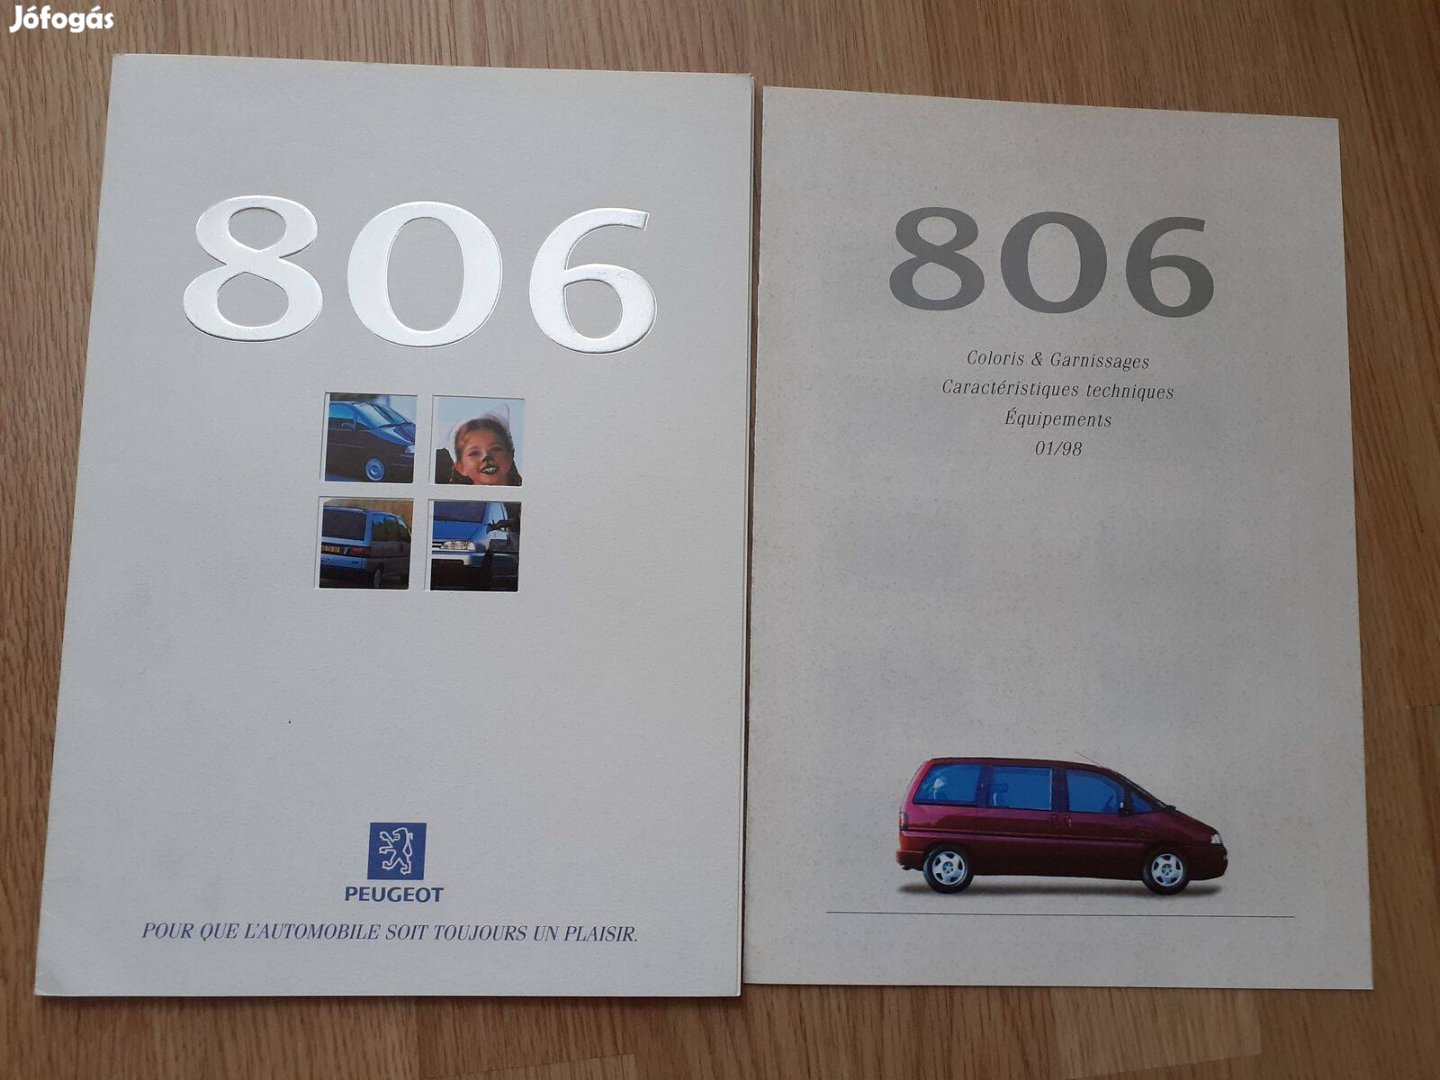 Peugeot 806 prospektus + műszaki adat - 1998, francia nyelvű